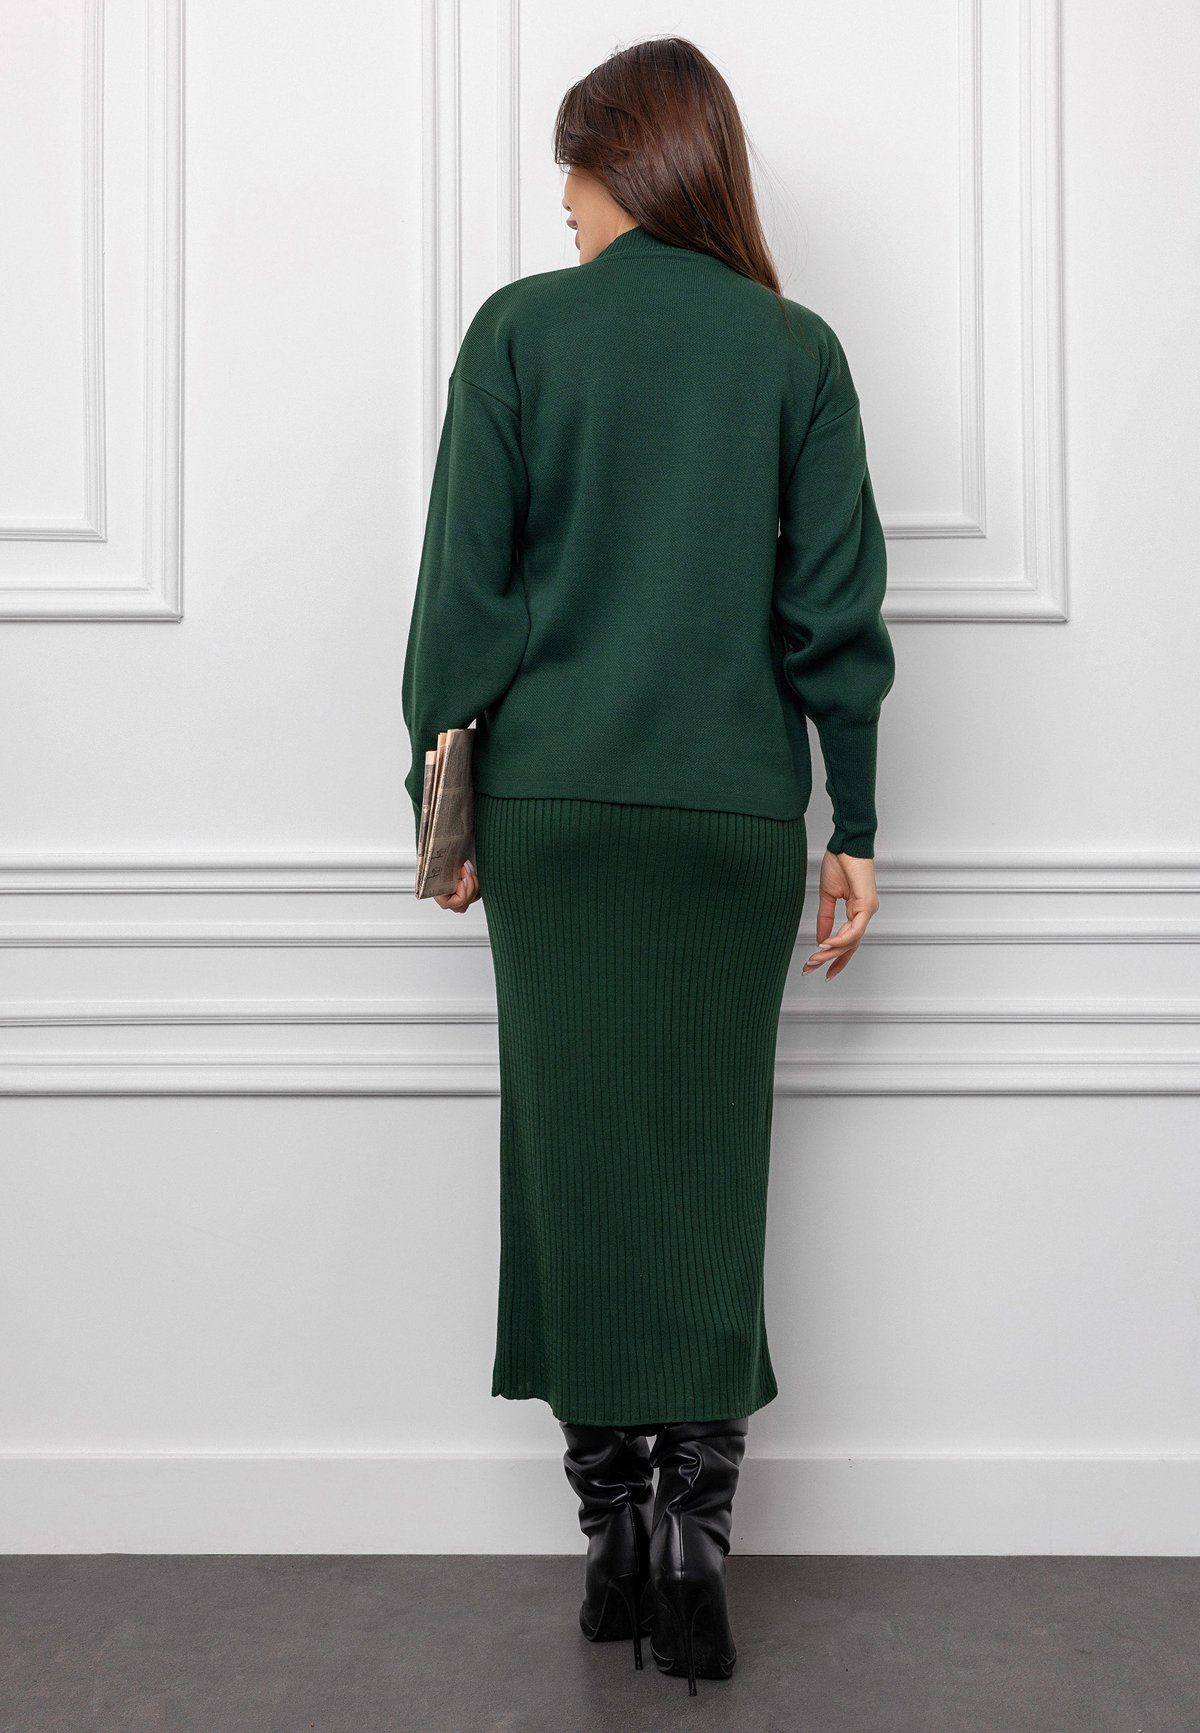 KASİDE Strickkleid Gestricktes Pulloverträgern oben Kleiderset Grün mit